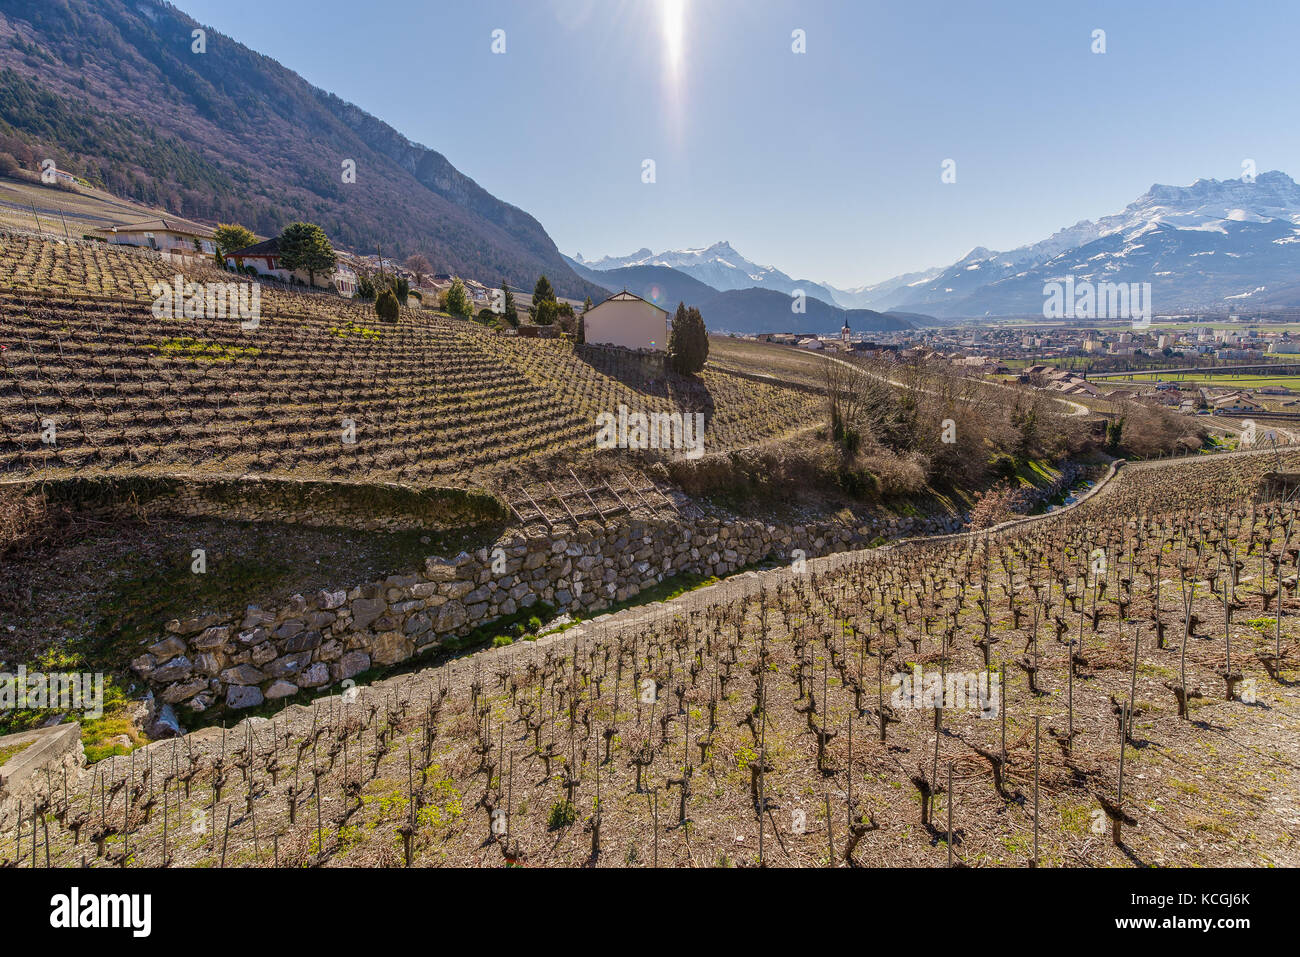 La viticulture du Clos du Rocher, Yvorne, Chablais, Vaud, Suisse Banque D'Images